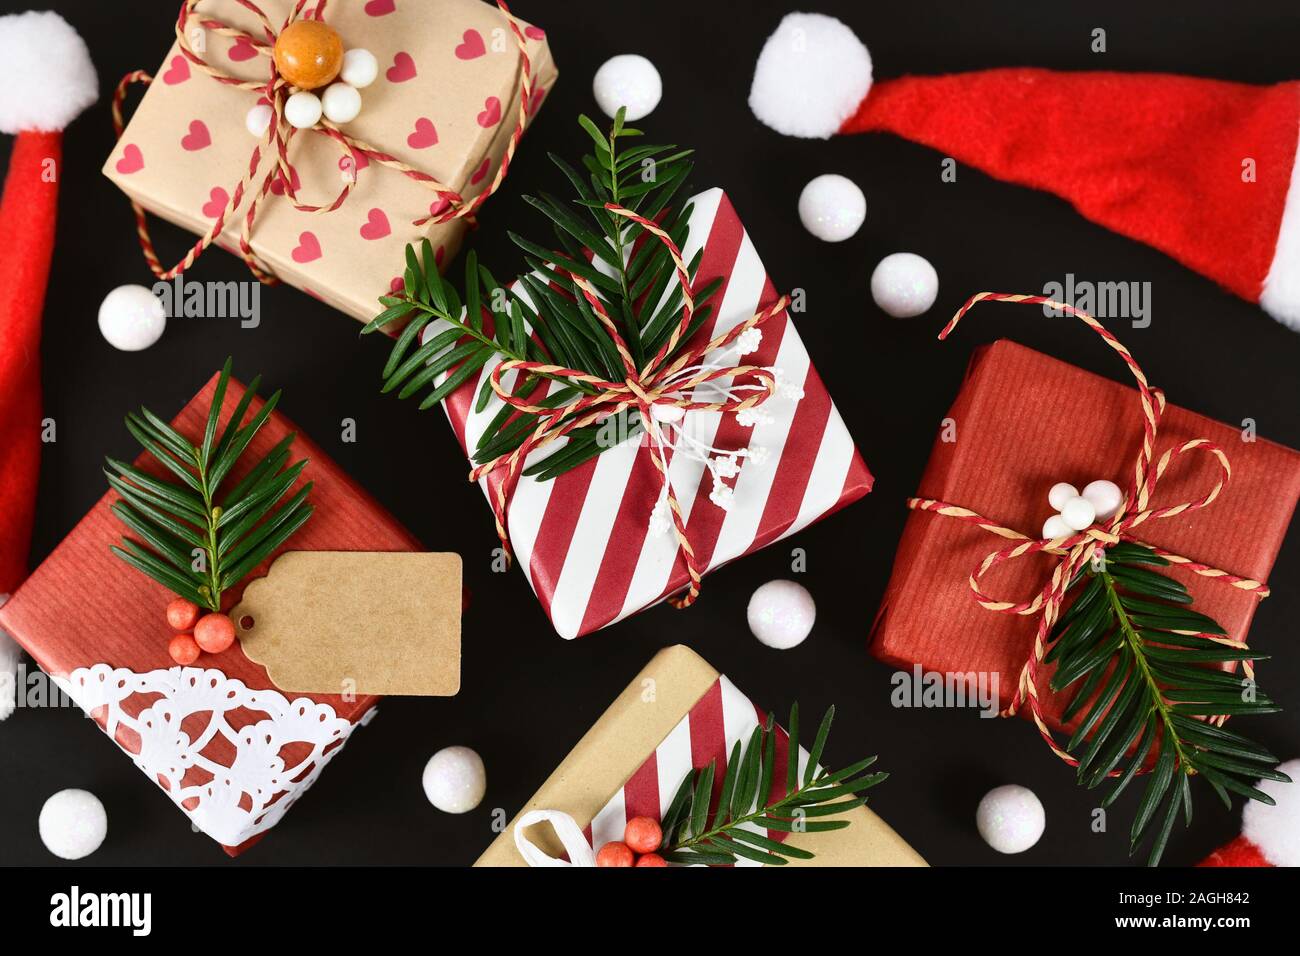 Vista superiore del bel rosso, bianco e marrone naturale decorato di Natale confezioni regalo con nastri e rami di abeti scuri su sfondo nero Foto Stock